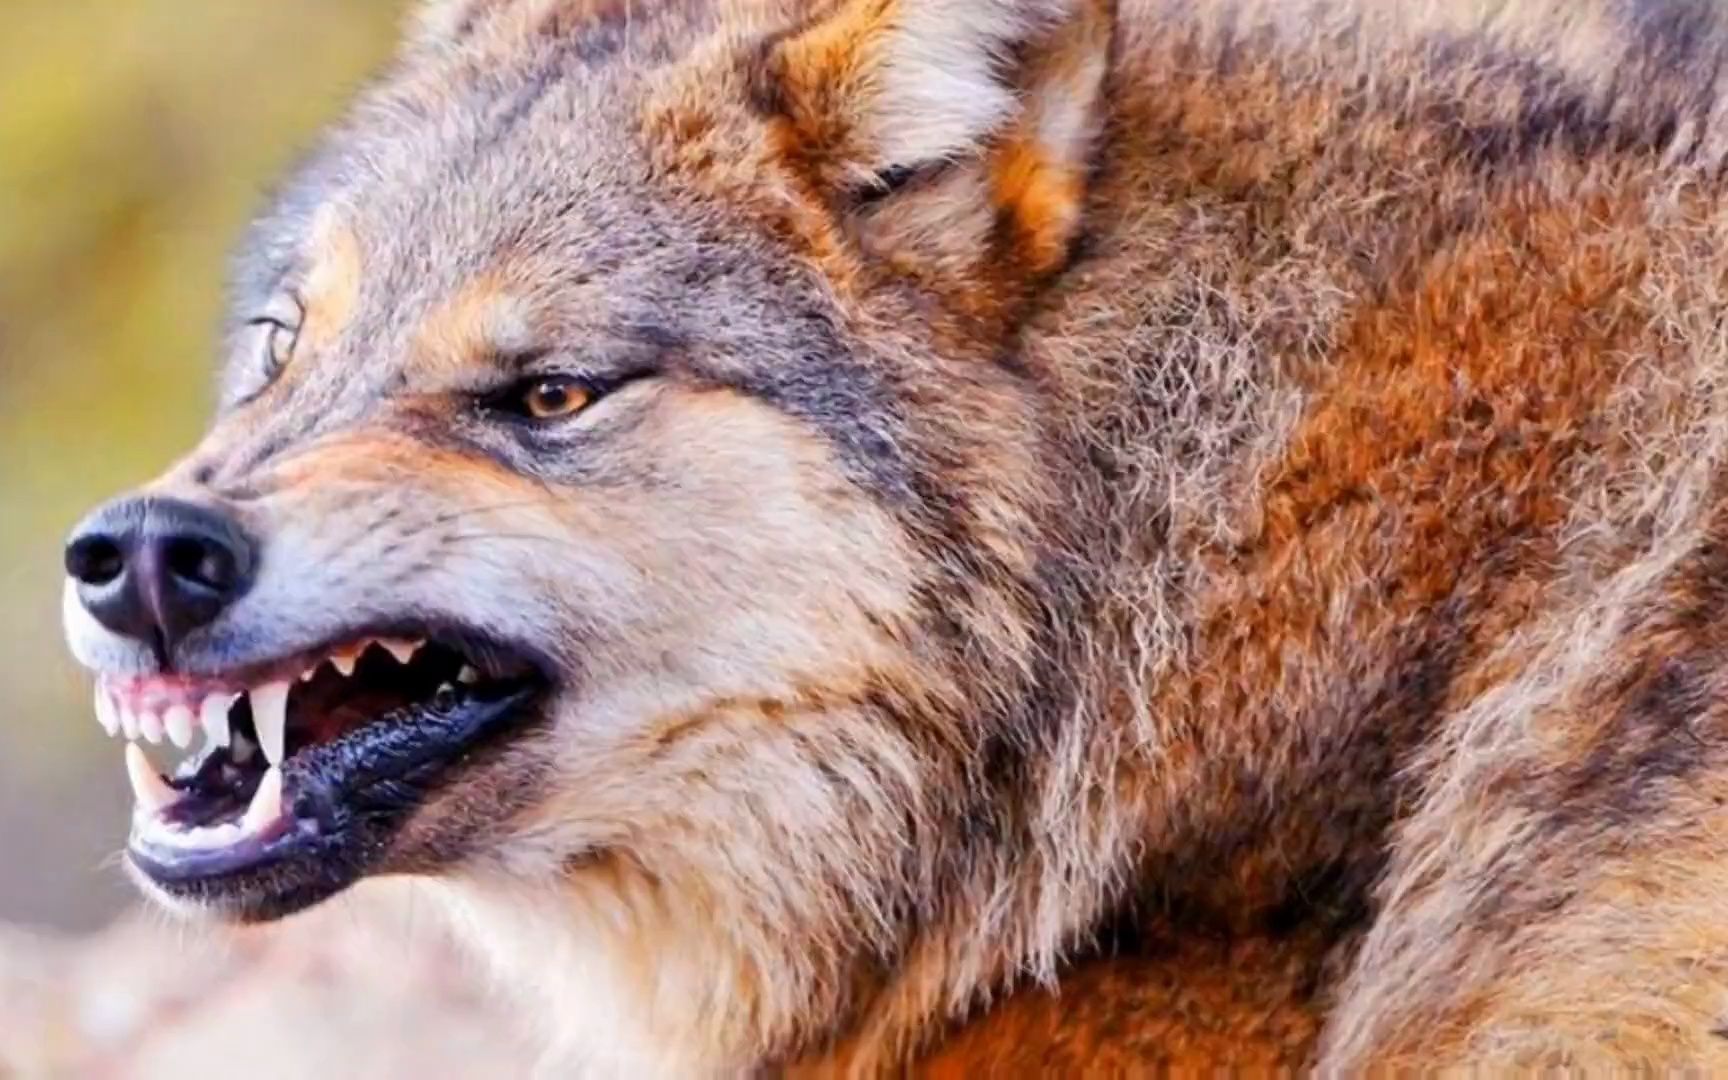 野狼频繁袭击家畜,愤怒的游牧民族拿起猎枪开始击杀狼 